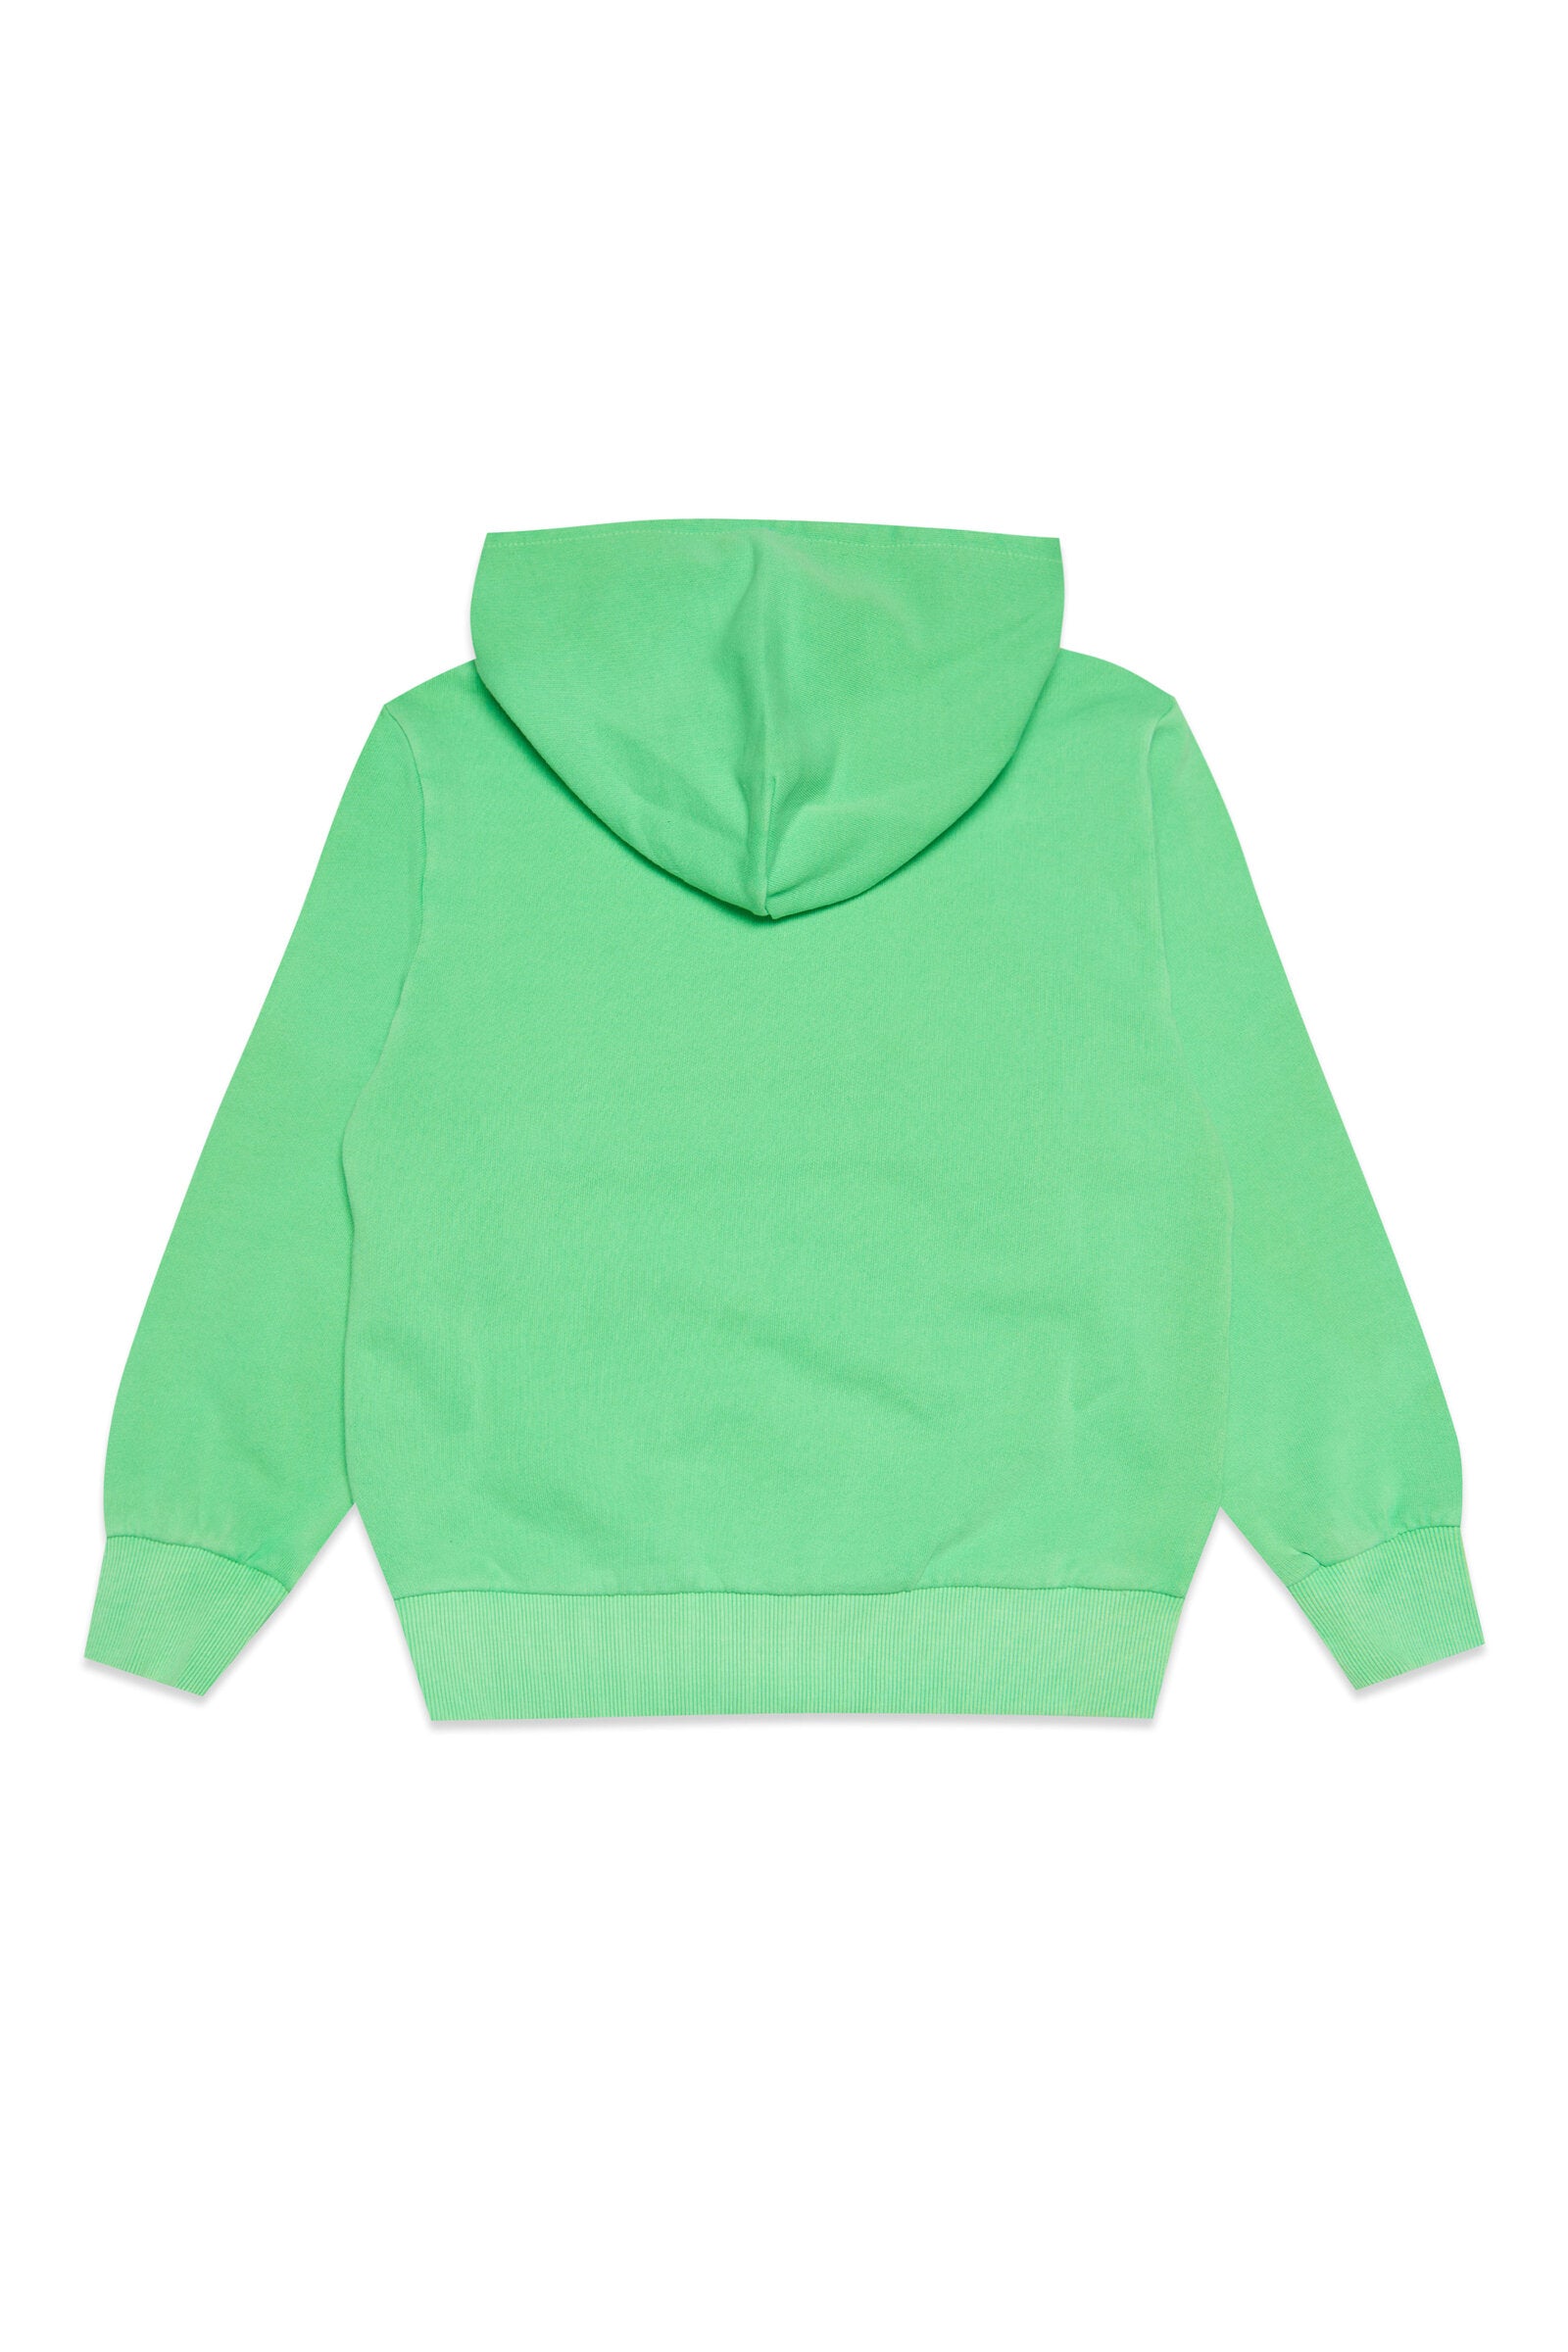 Sudadera capucha algodón verde fluo